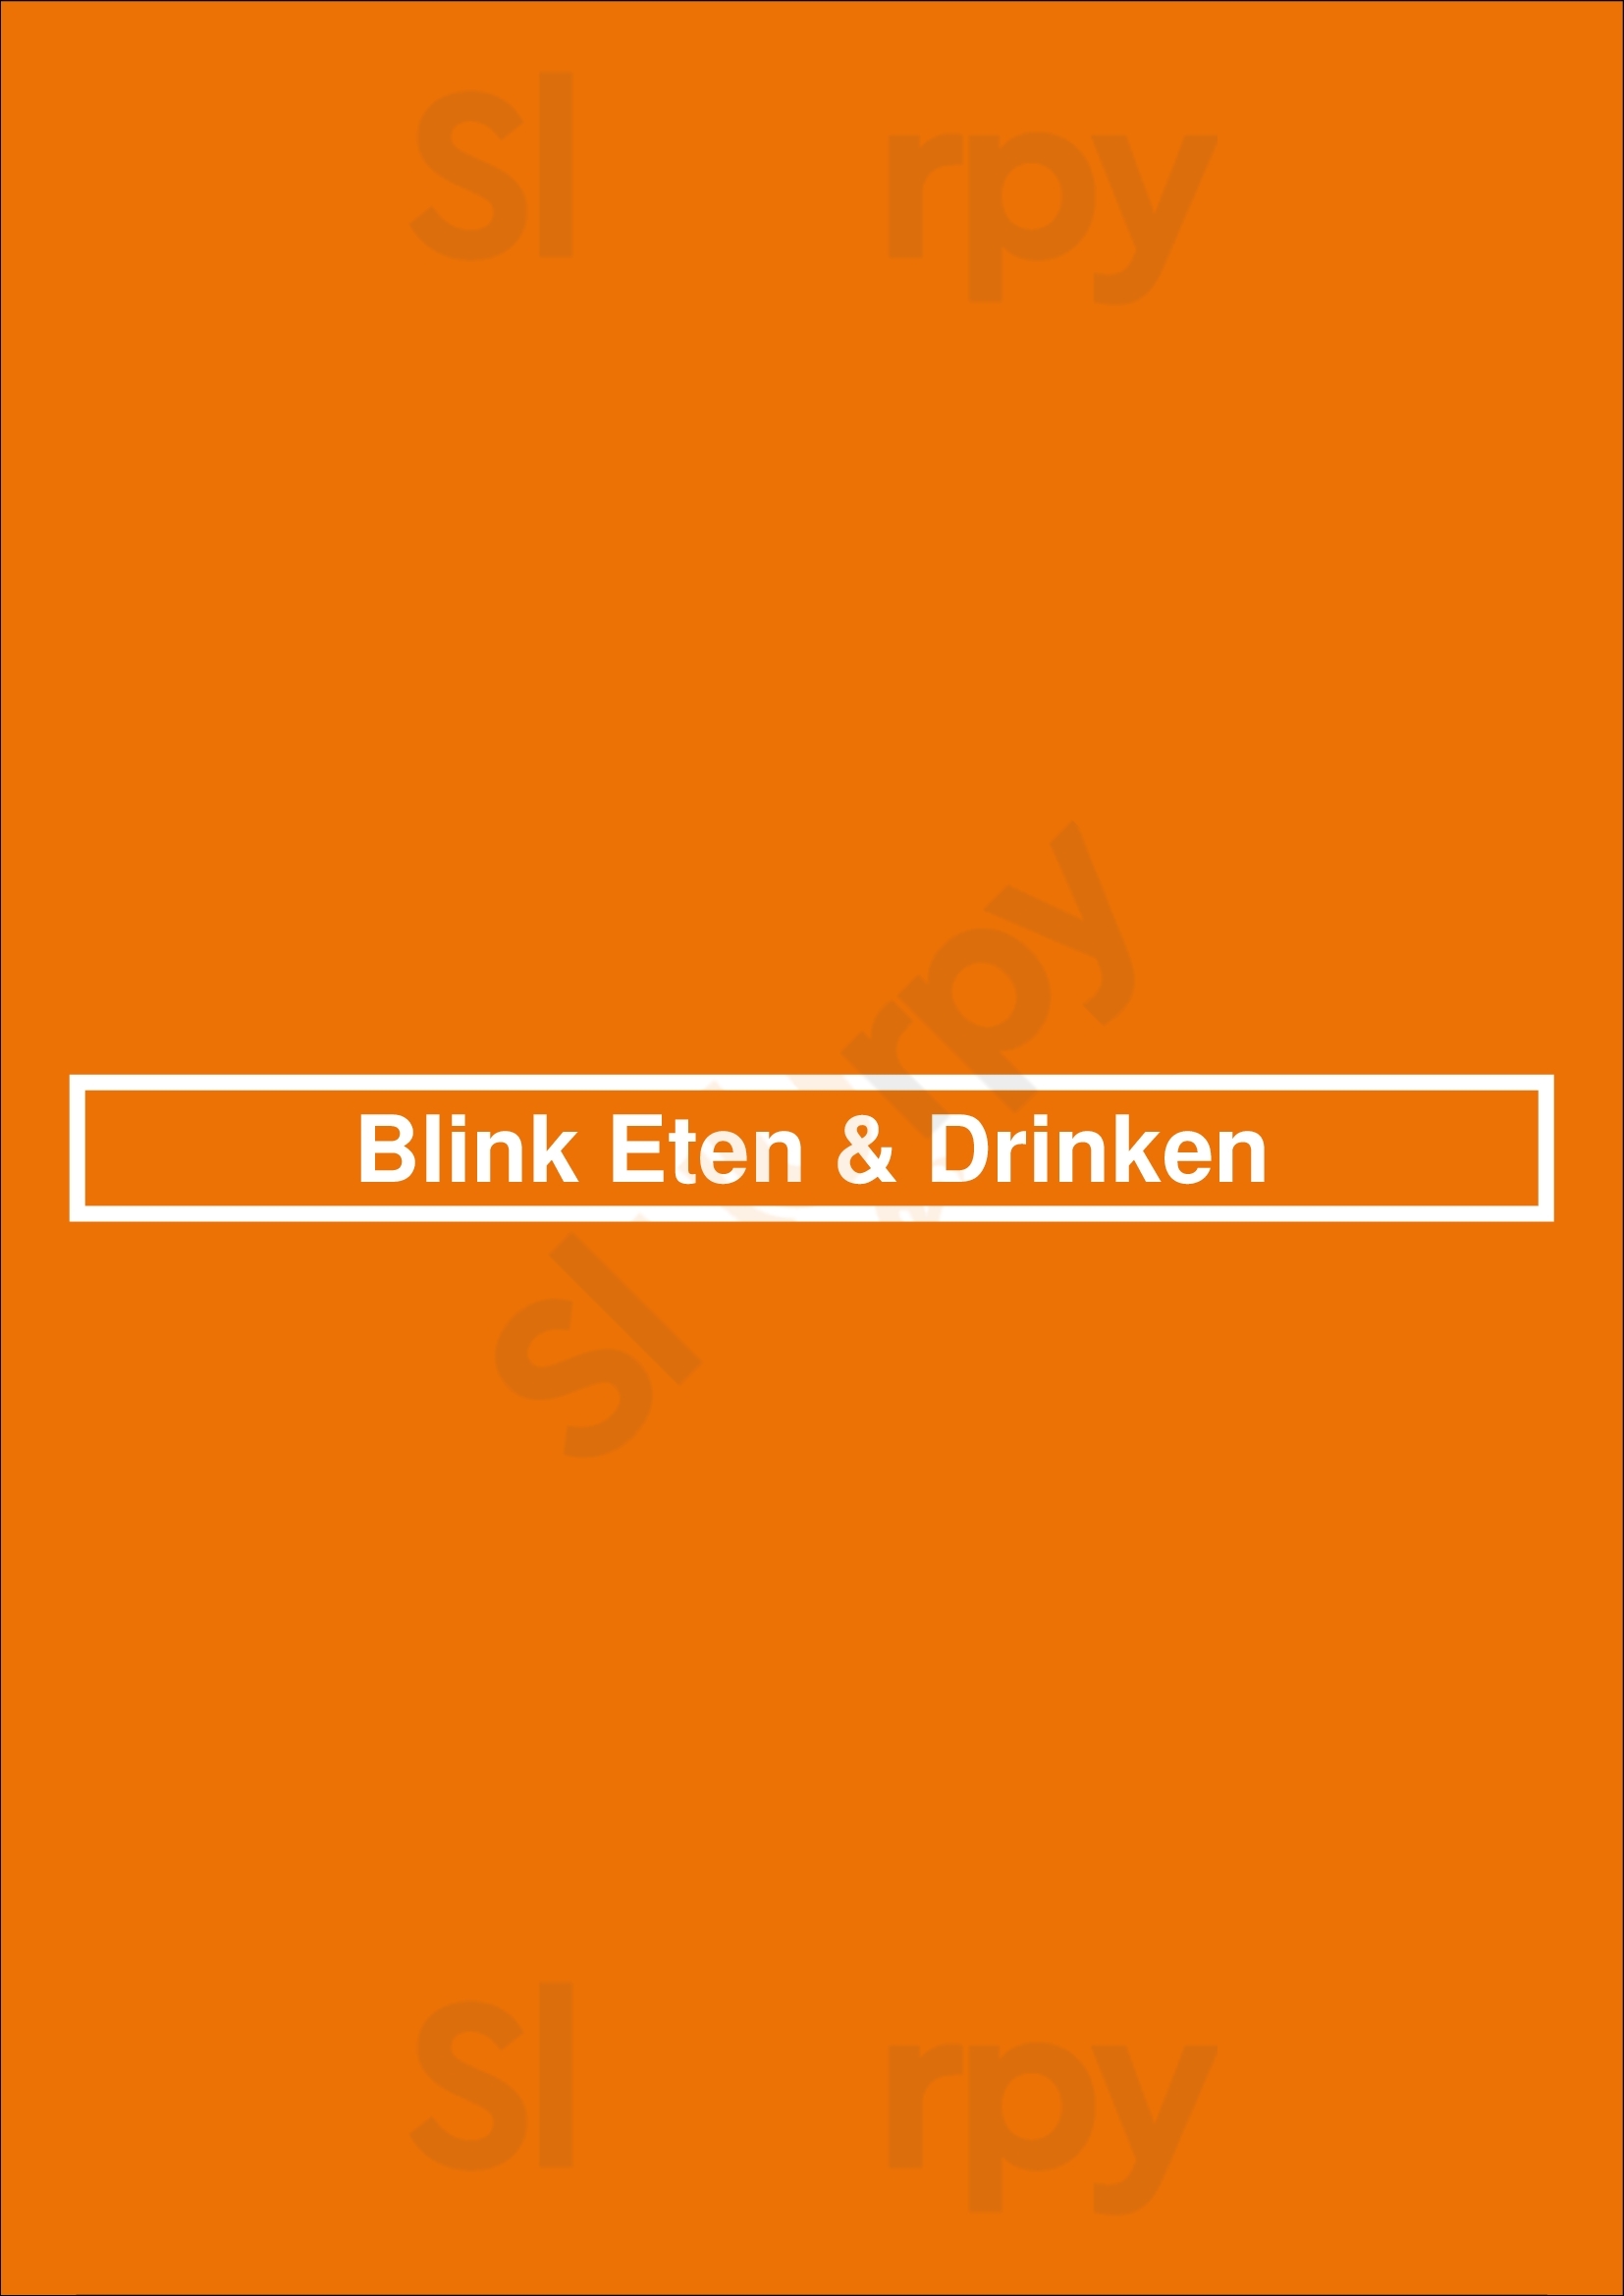 Blink Eten & Drinken Zeist Menu - 1